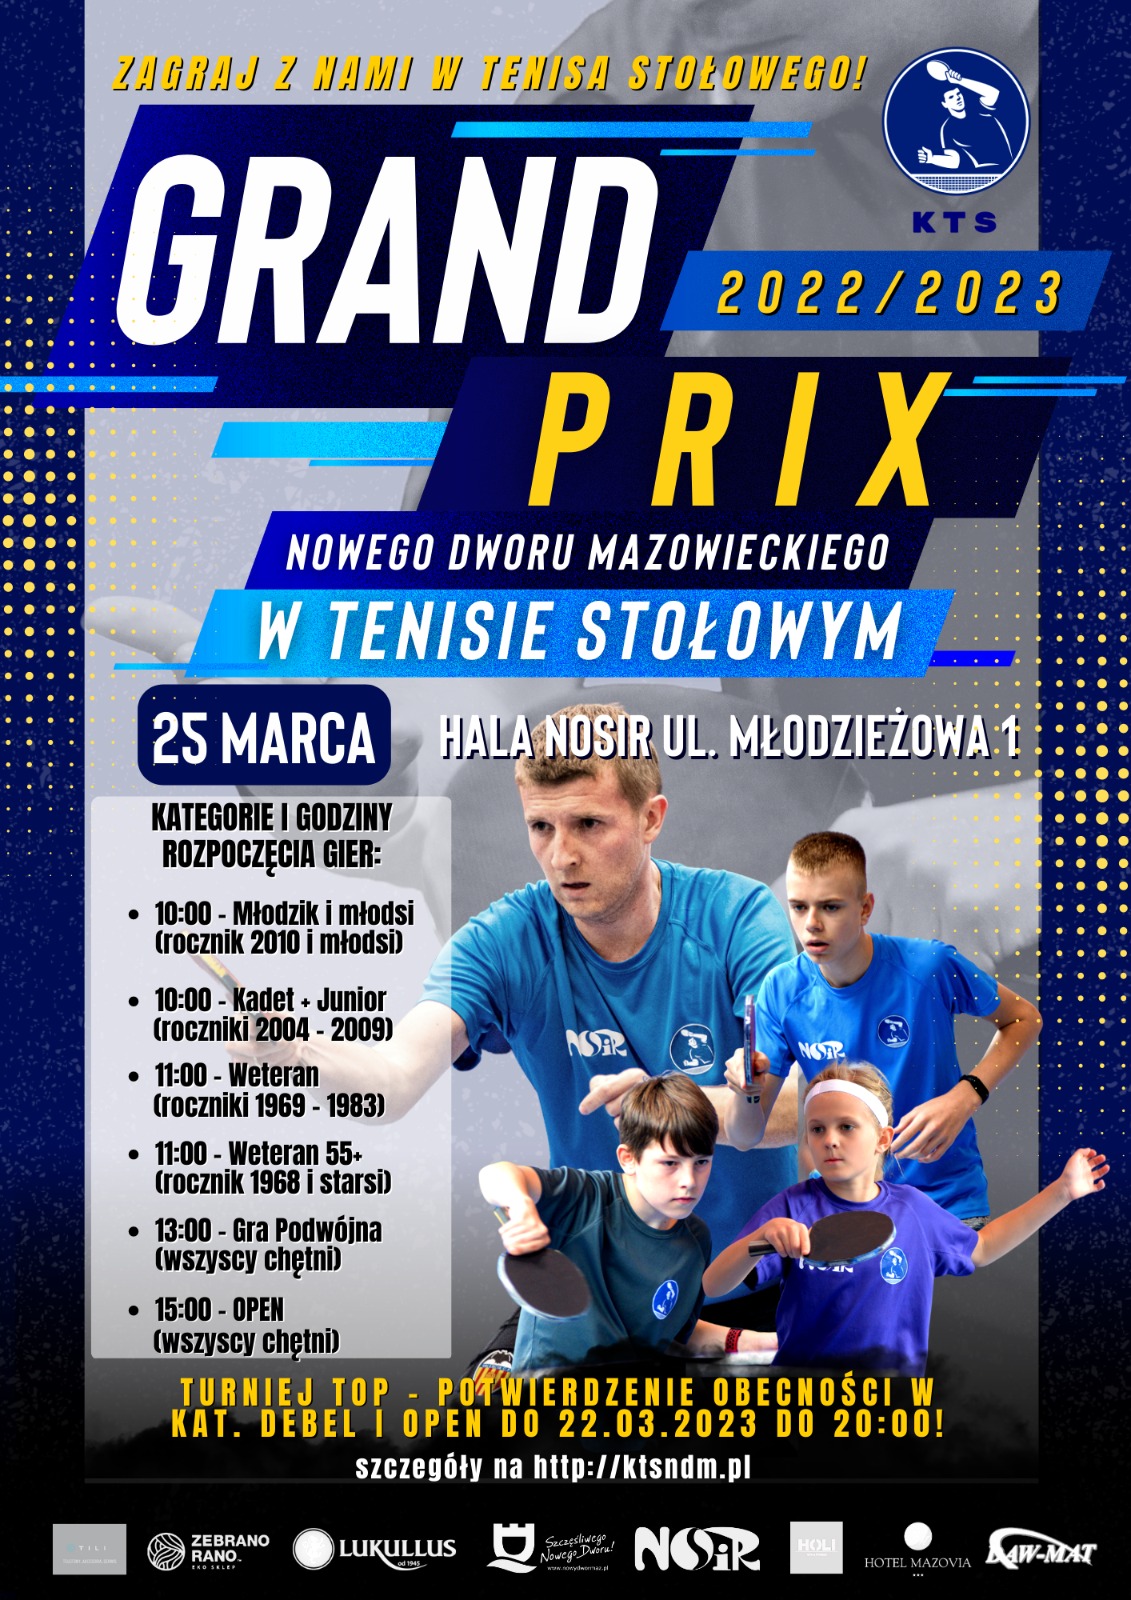 Plakat turnieju Grand Prix Nowego Dworu Mazowieckiego 2022/2023 - turniej TOP